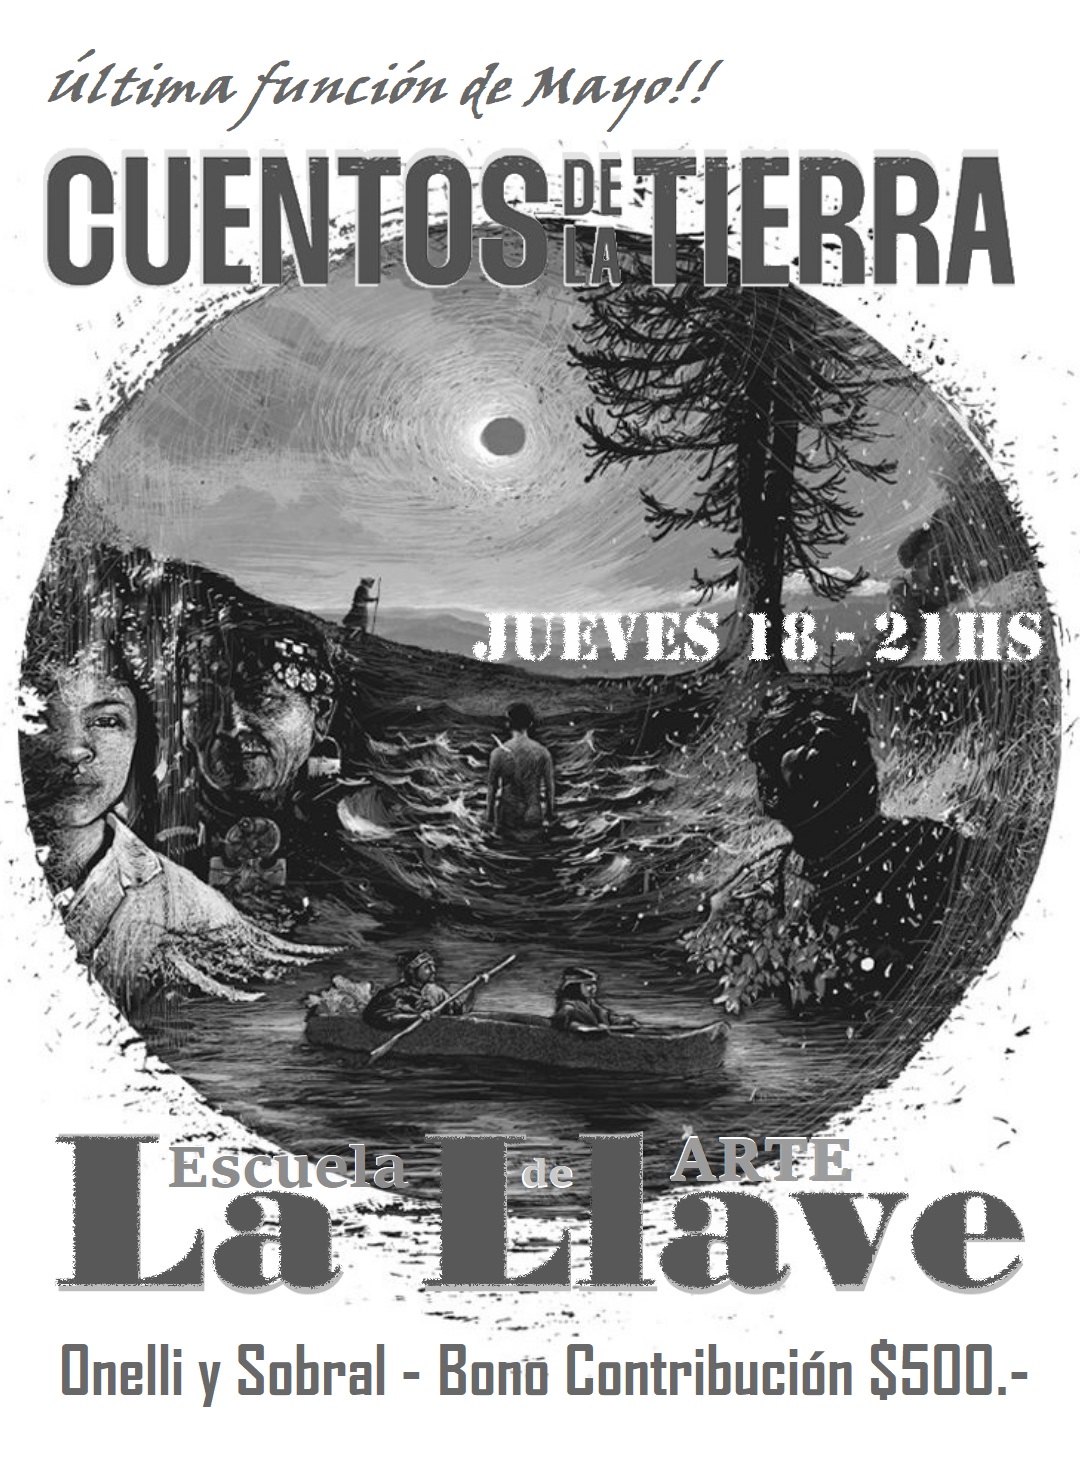 (((video))) Bariloche: Ultima función de mayo de Cuentos de la tierra en La Llave